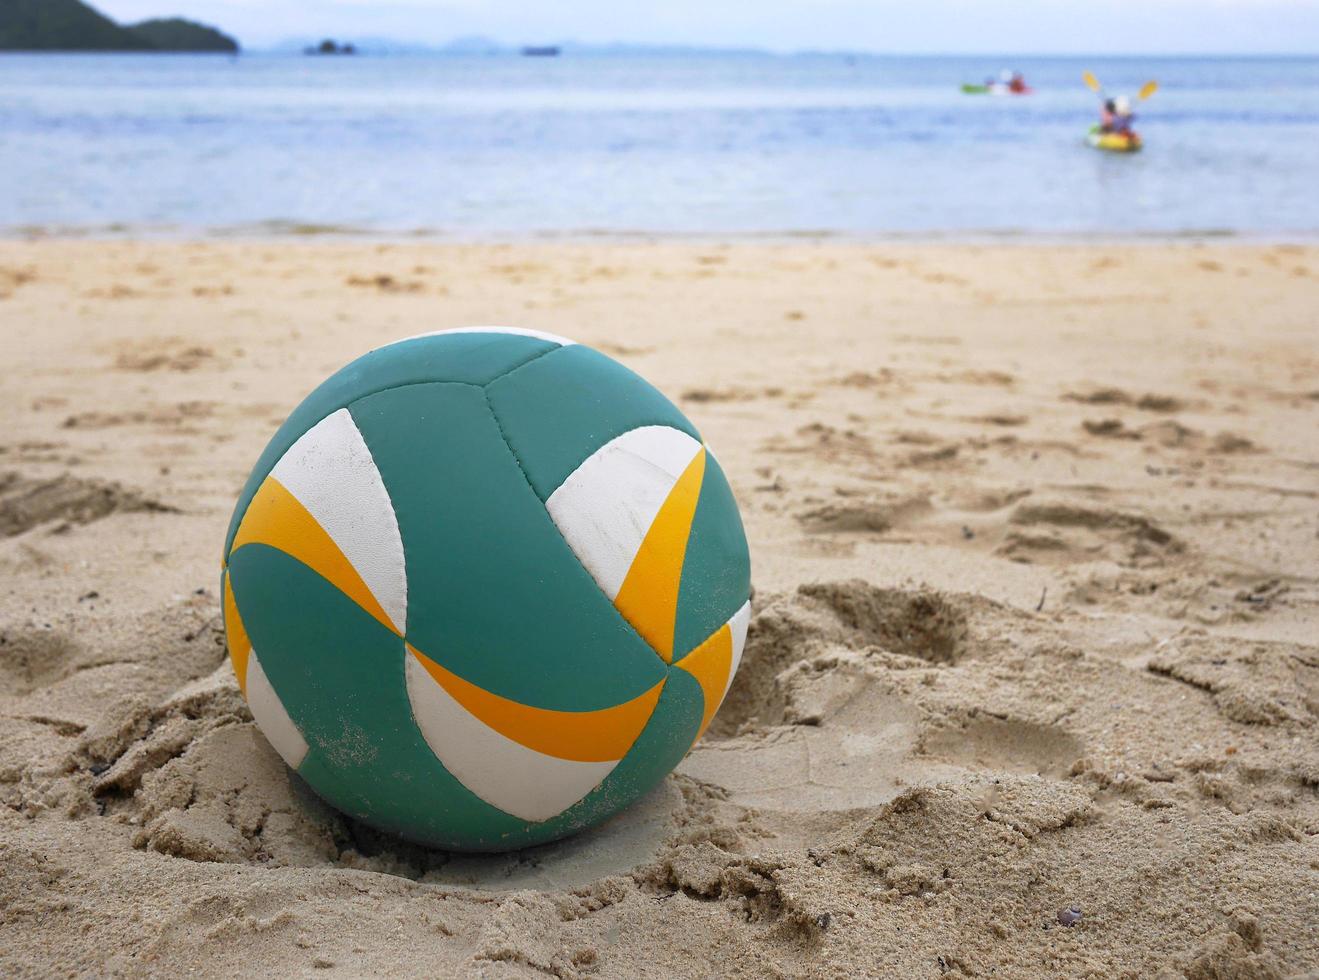 cerrar un voleibol de playa en la arena con fondo de mar foto